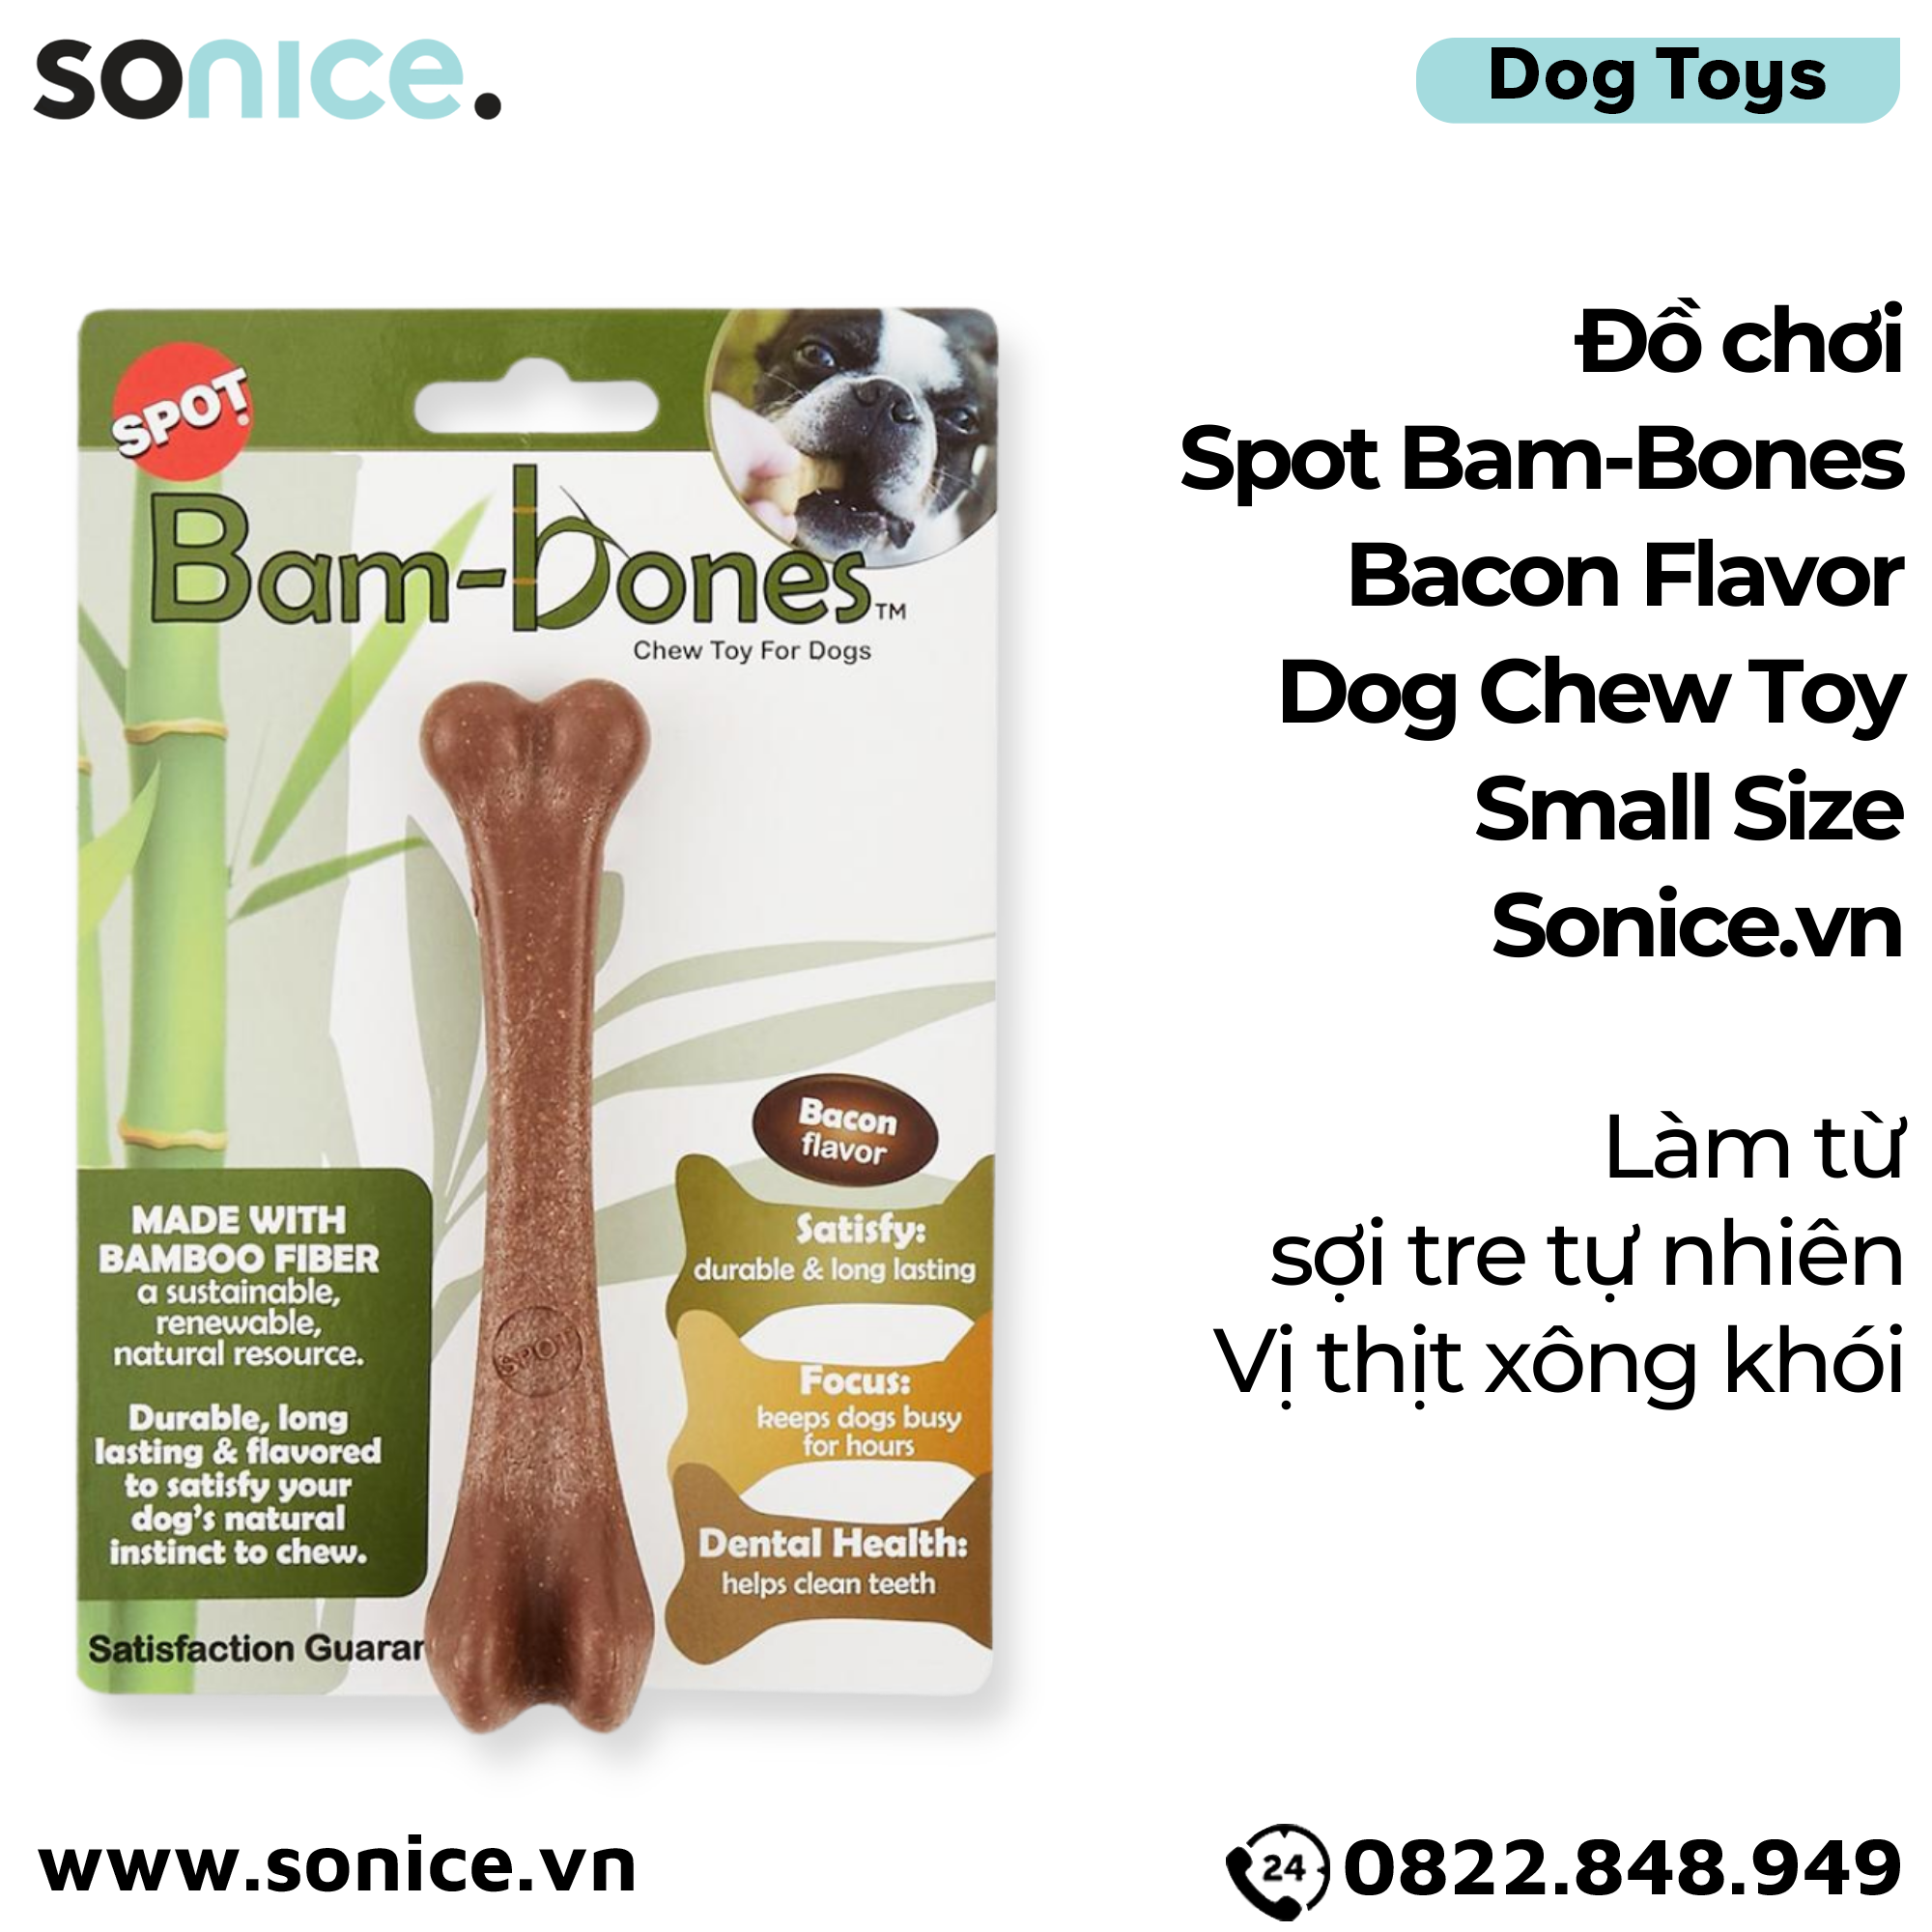  Đồ chơi Spot Bam-Bones Bacon Flavor Dog Chew Toy Small Size - Làm từ sợi tre tự nhiên, vị thịt xông khói SONICE. 